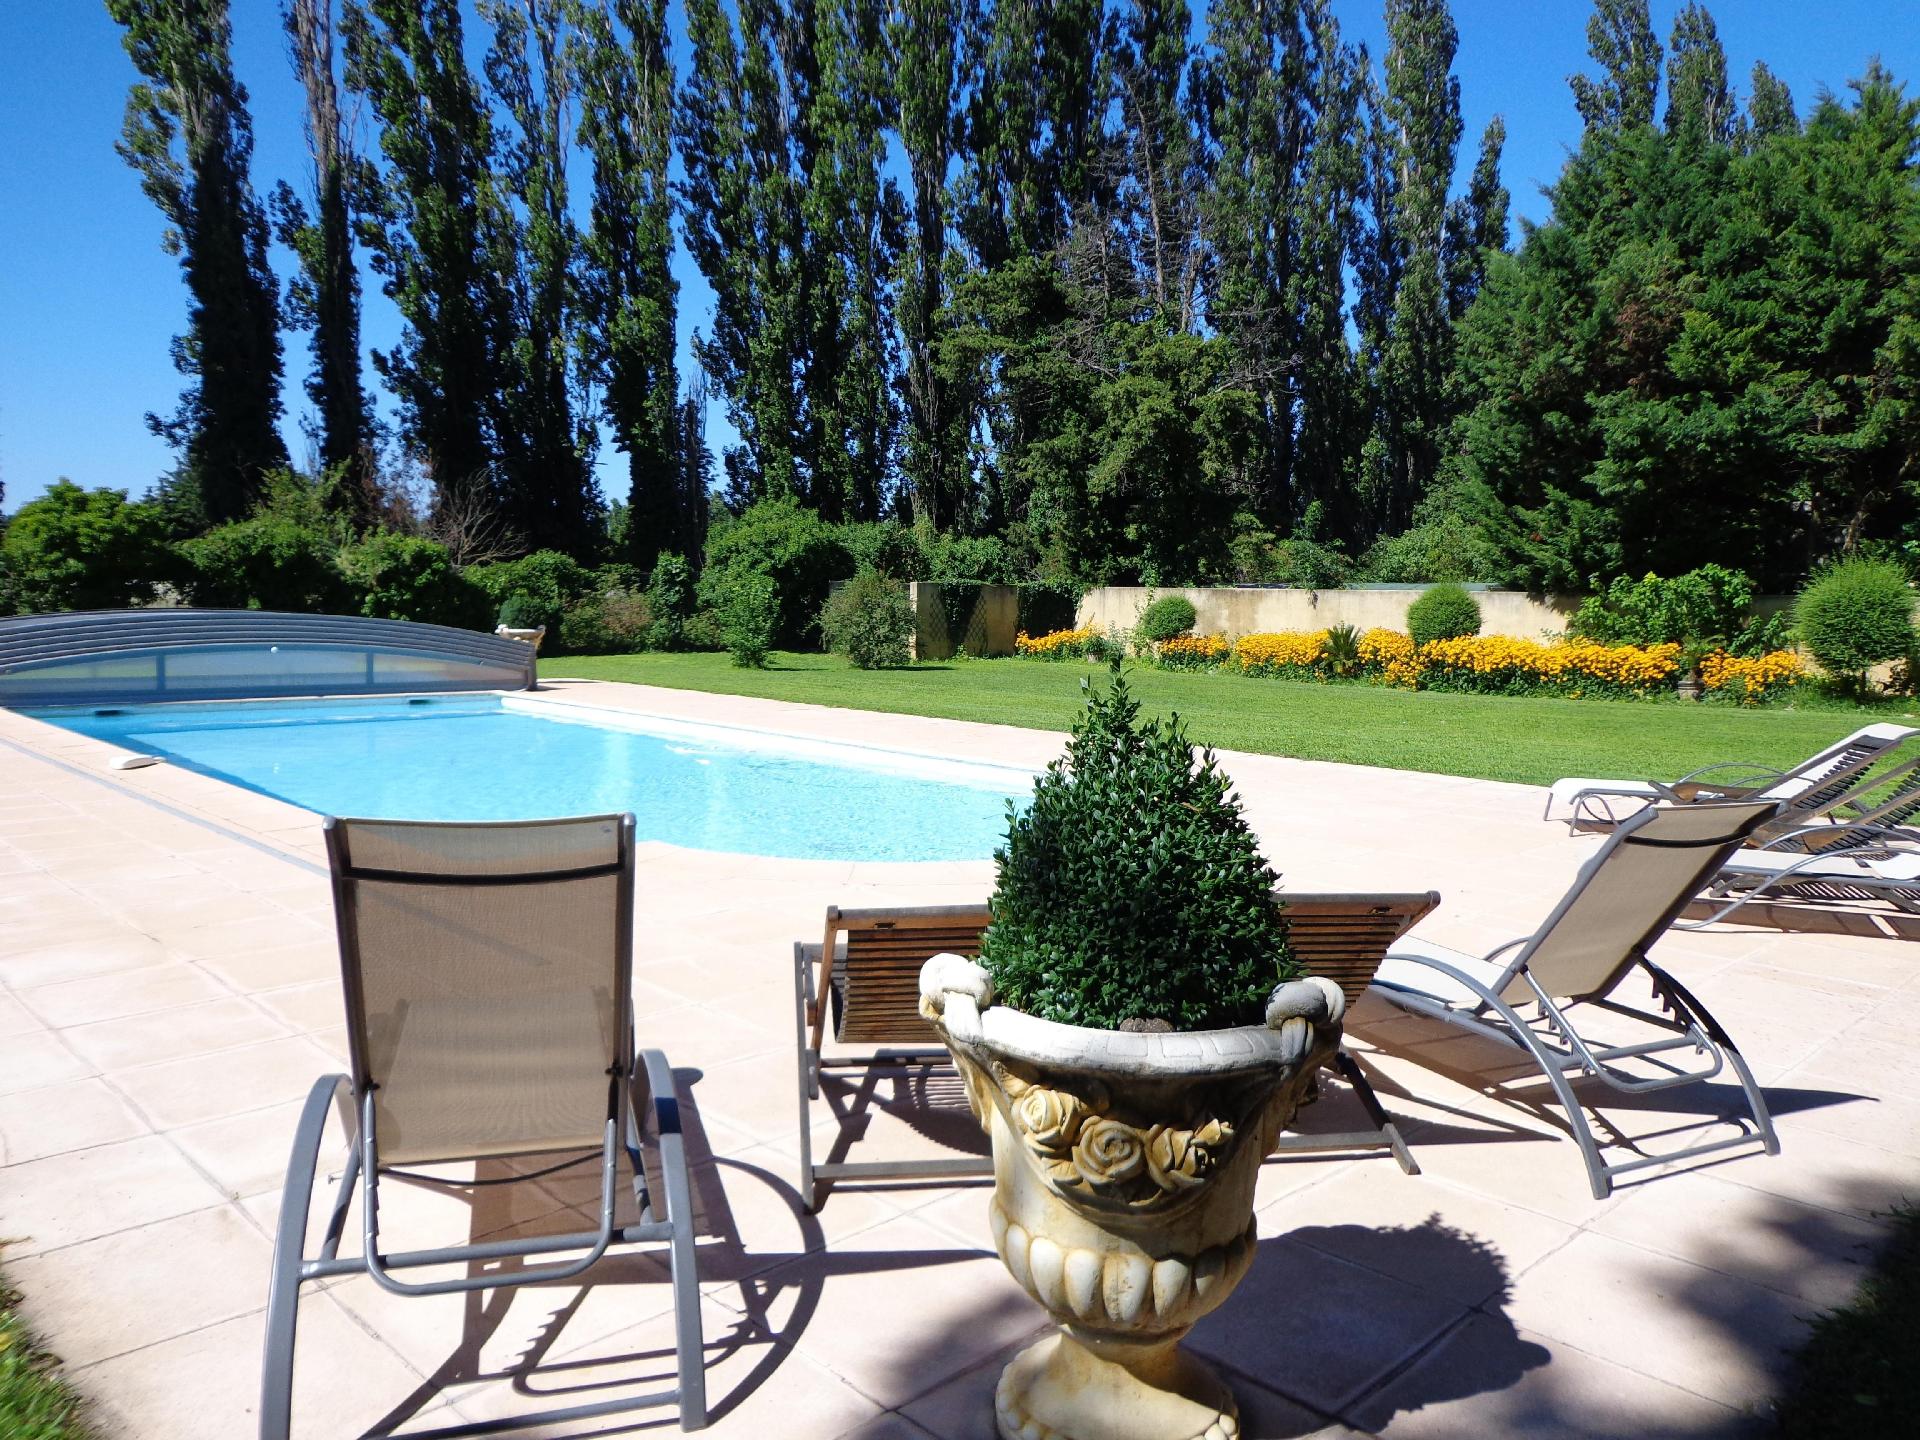 Ferienwohnung für 6 Personen ca. 110 m²  Ferienhaus in Frankreich